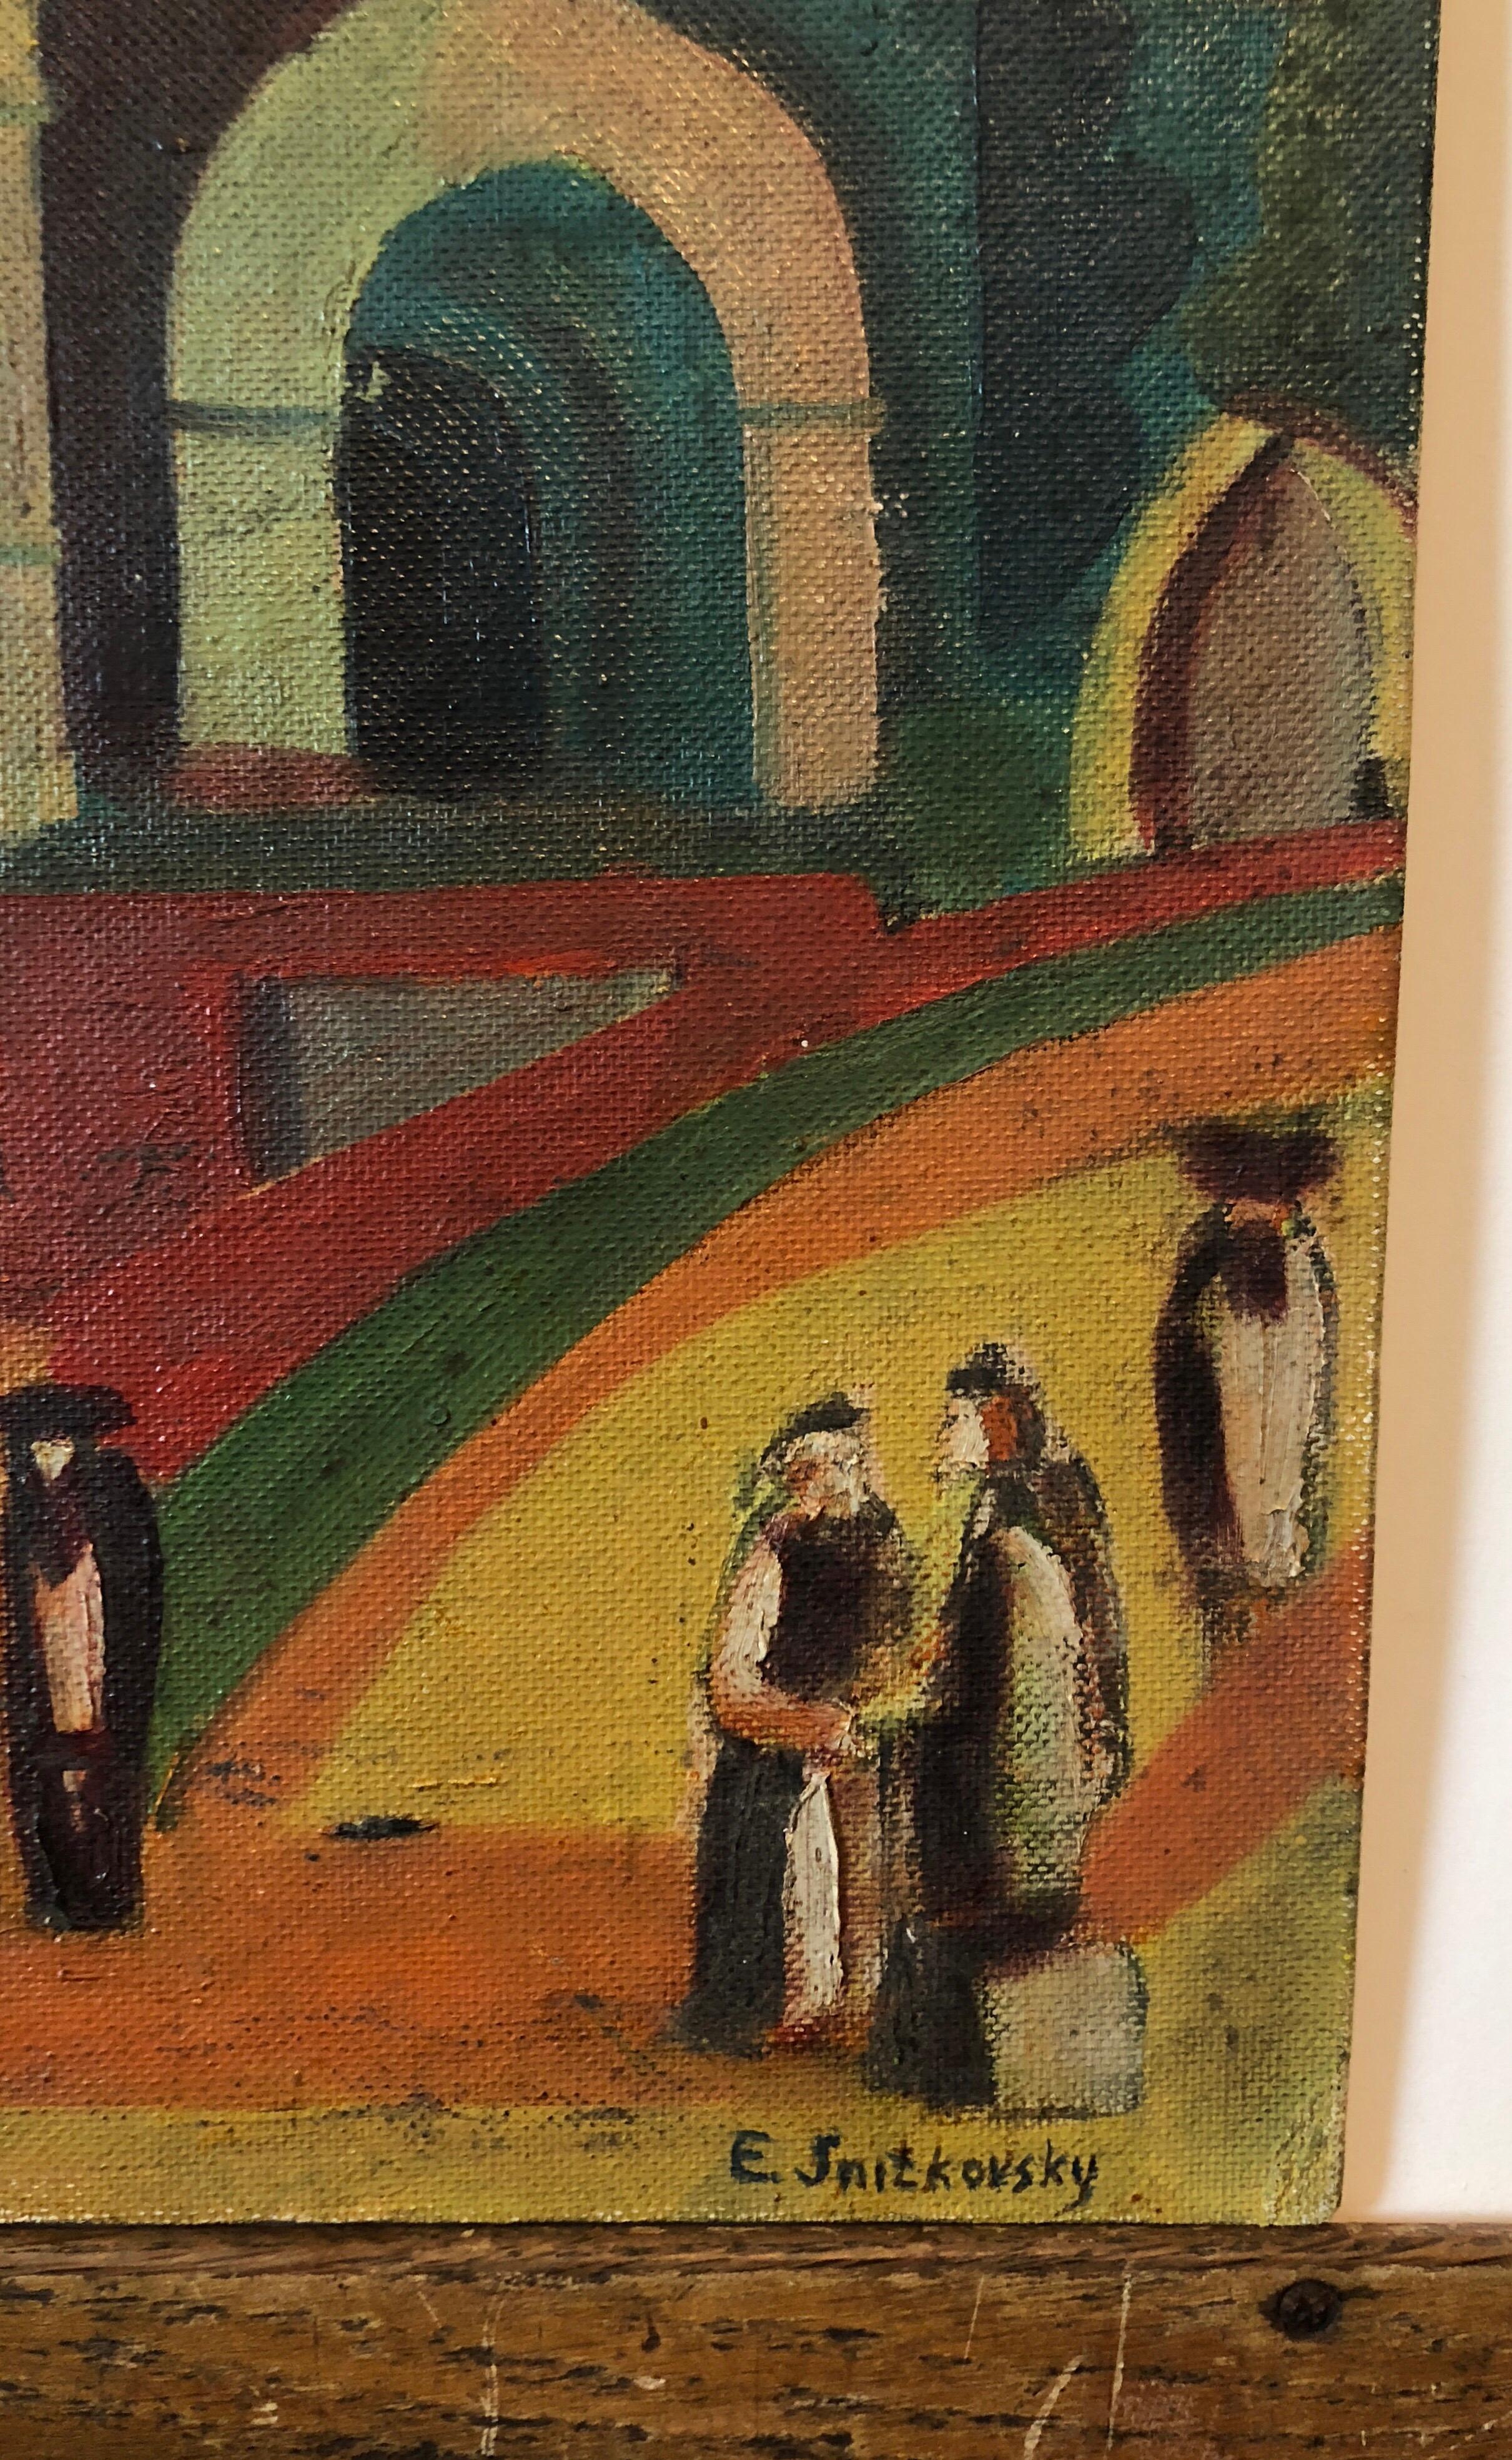 Außerhalb der Synagoge Russisches Judaica Ölgemälde – Painting von emmanuel Snitkovsky